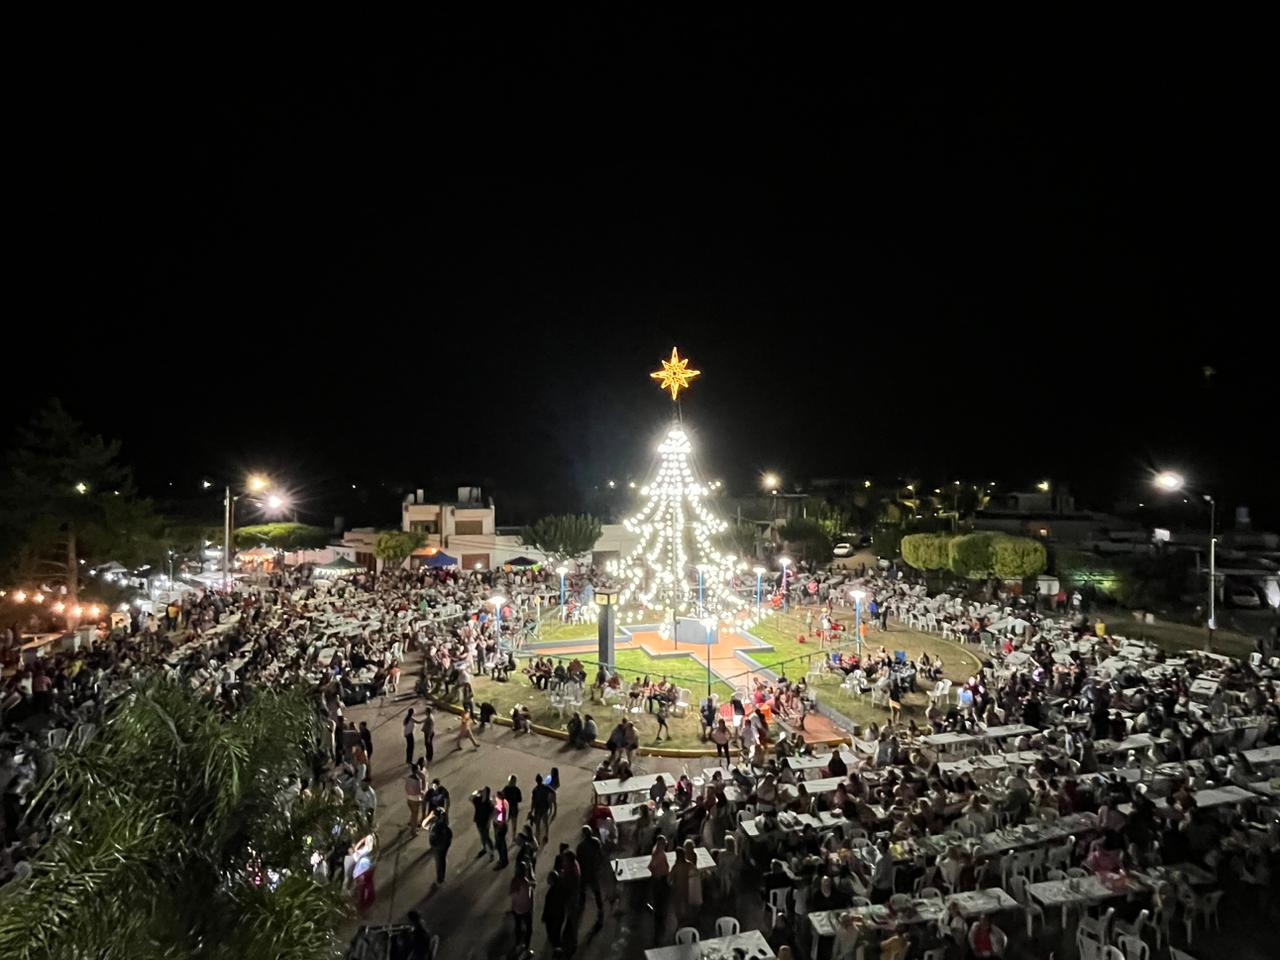 Chovet: más de 3500 personas en la Fiesta del Arbolito